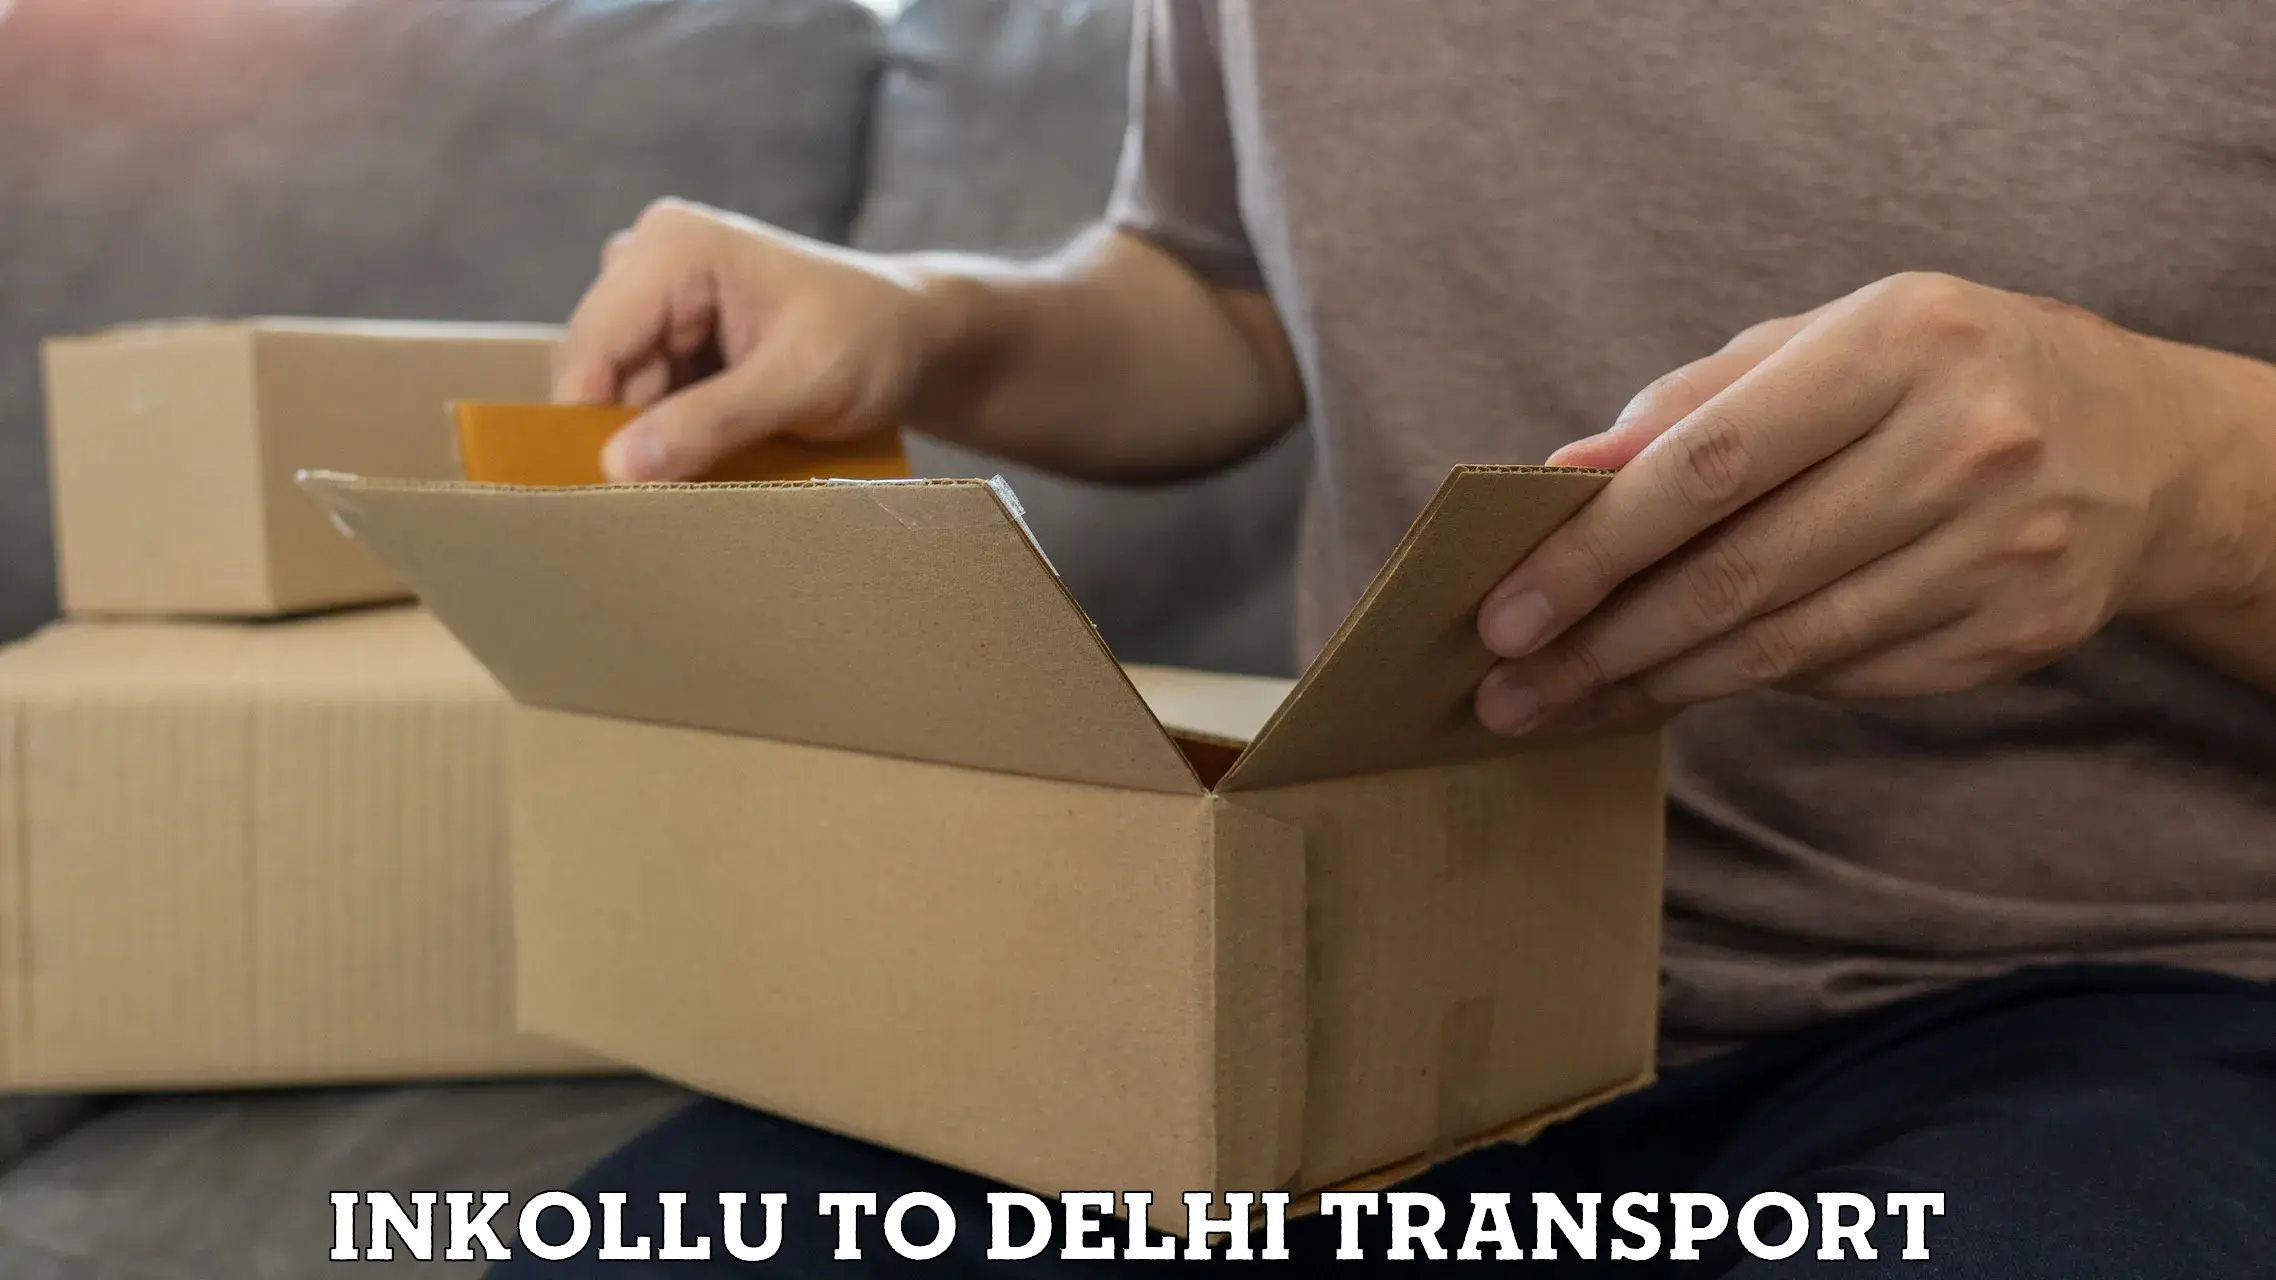 Nearest transport service Inkollu to University of Delhi